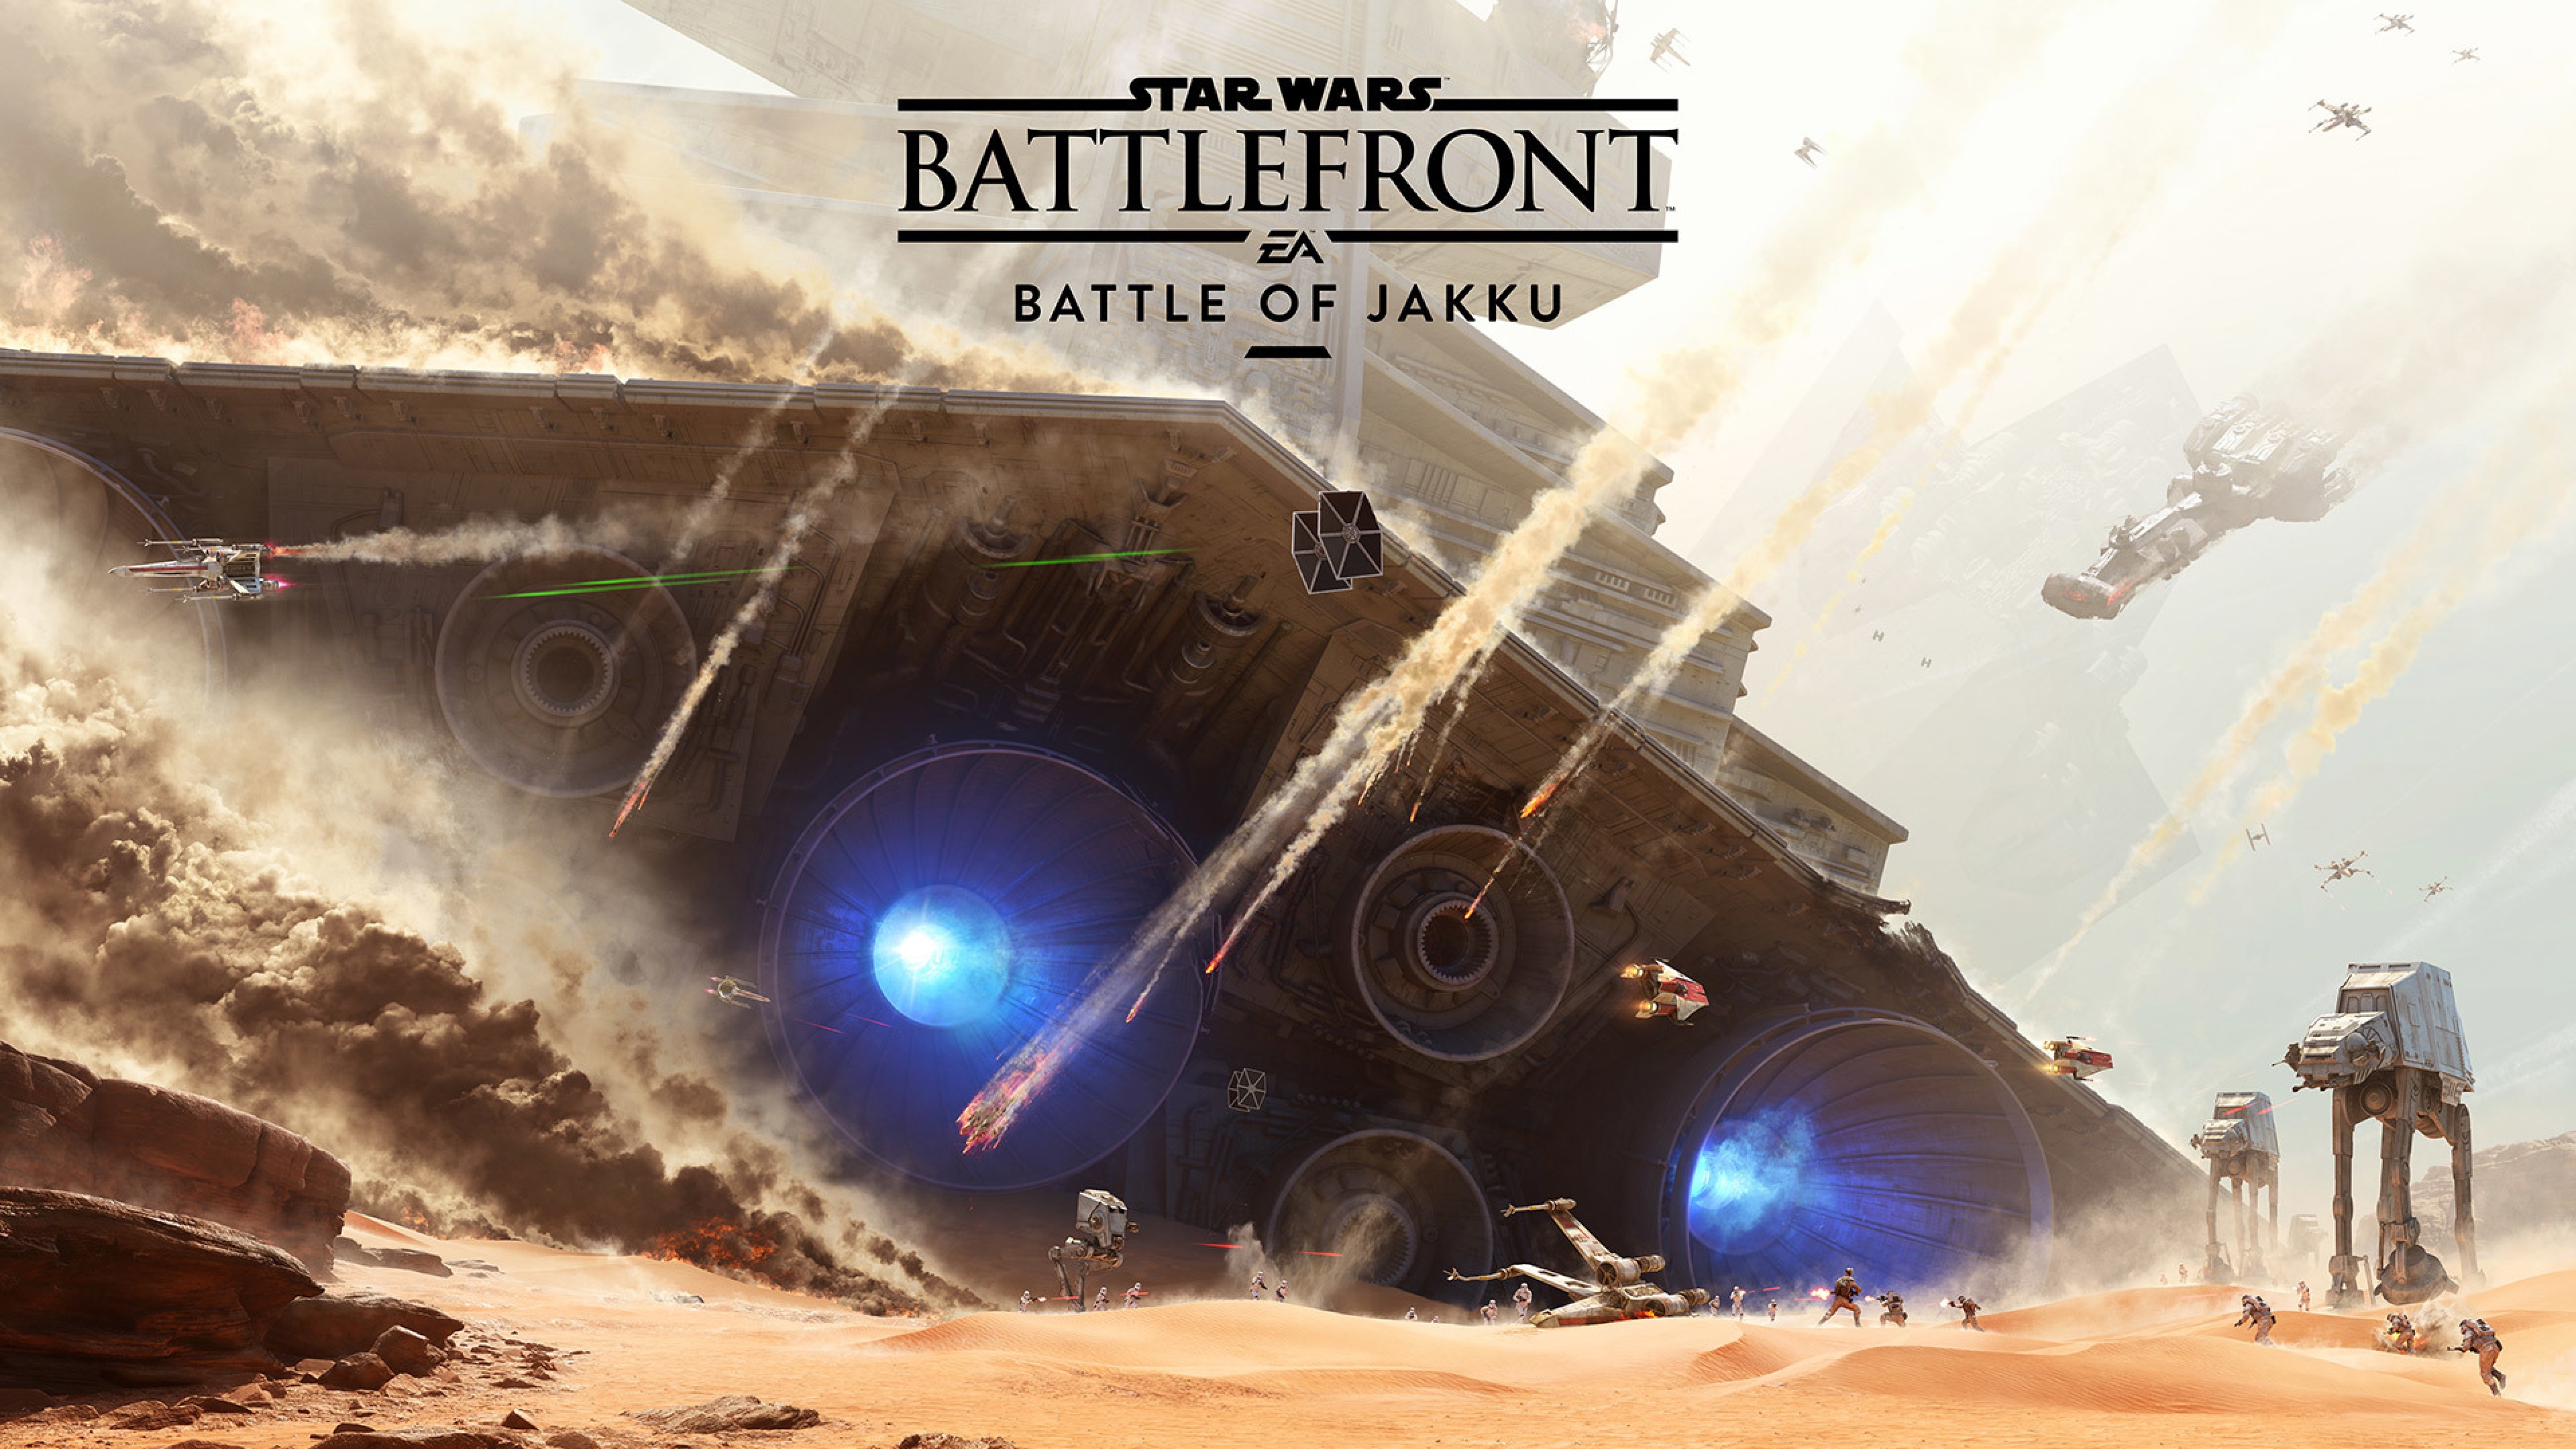 Star Wars Battlefront Battle Of Jakku Wallpaper Background 4k Ultra